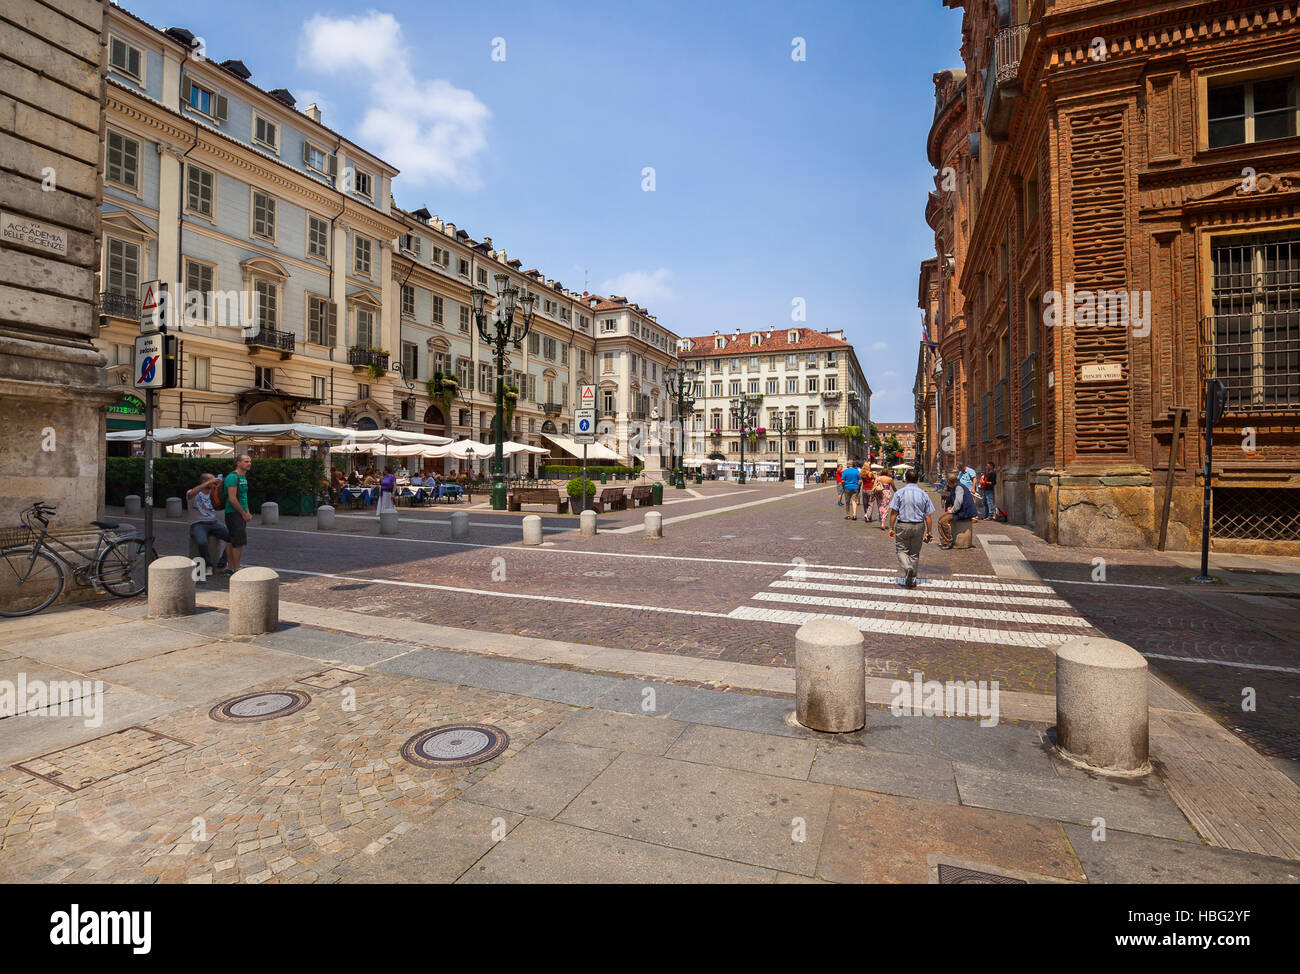 Piazza Carignano square in Turin Stock Photo